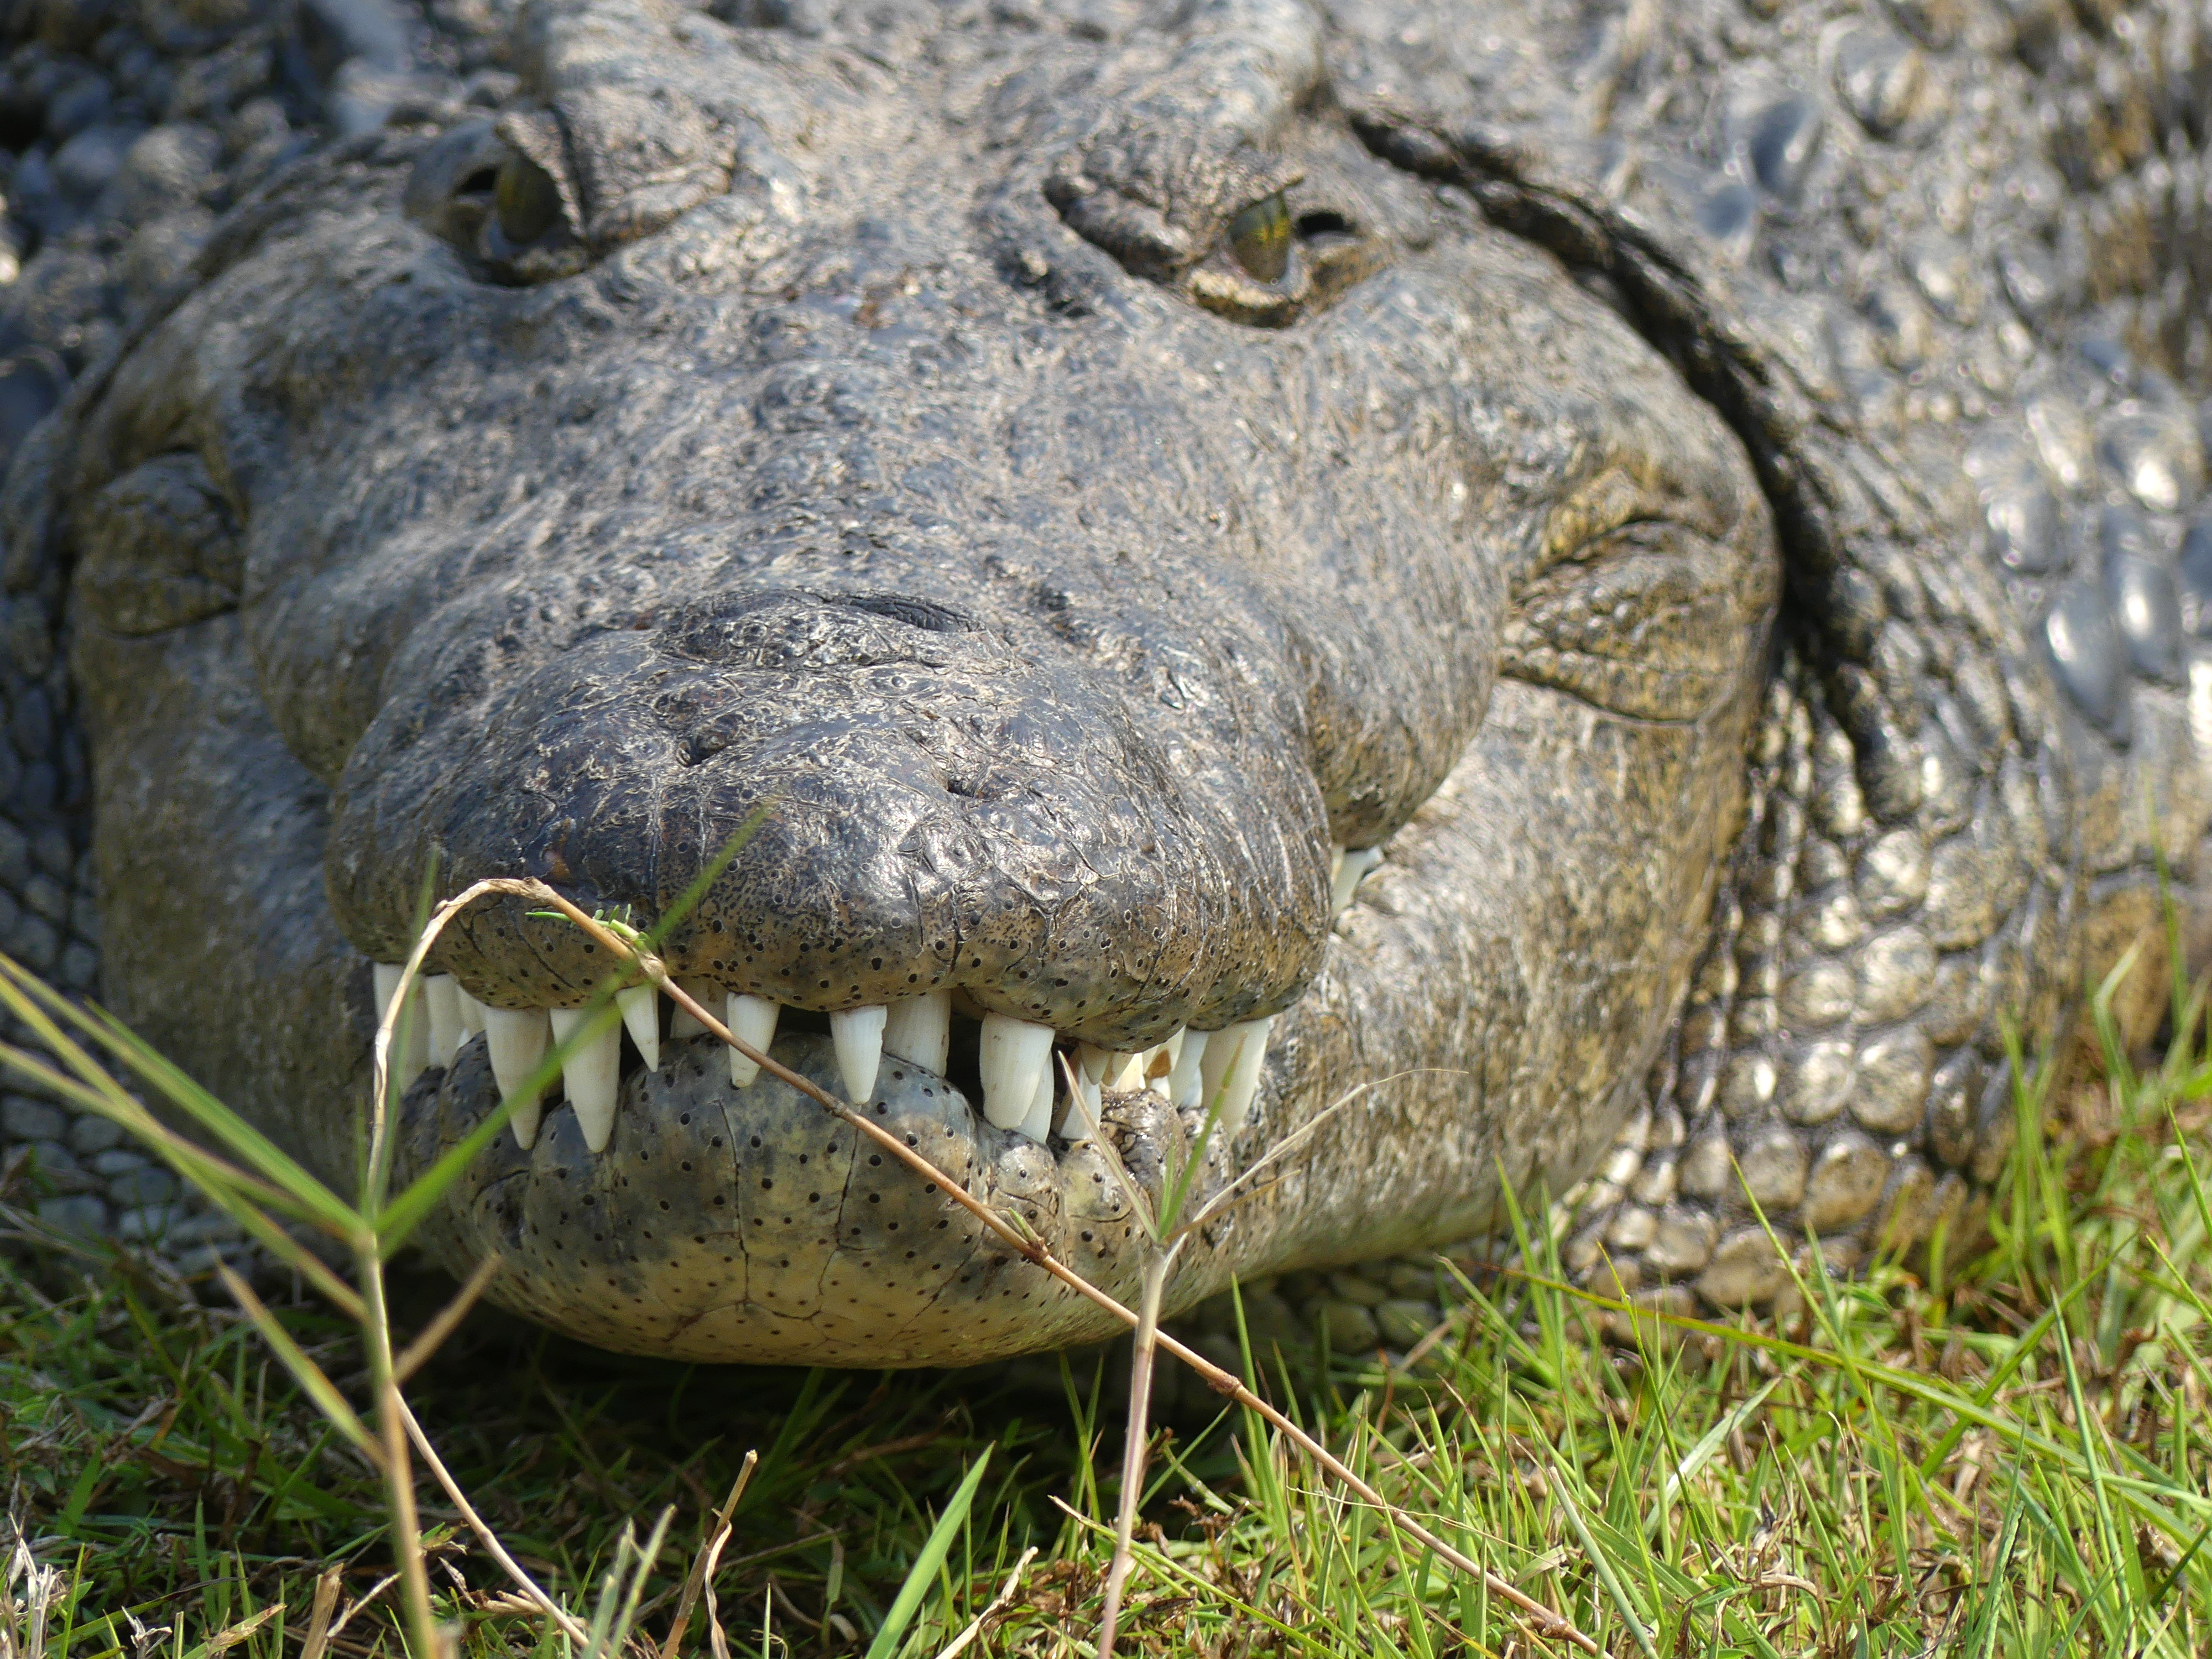 crocodile nose on closeup